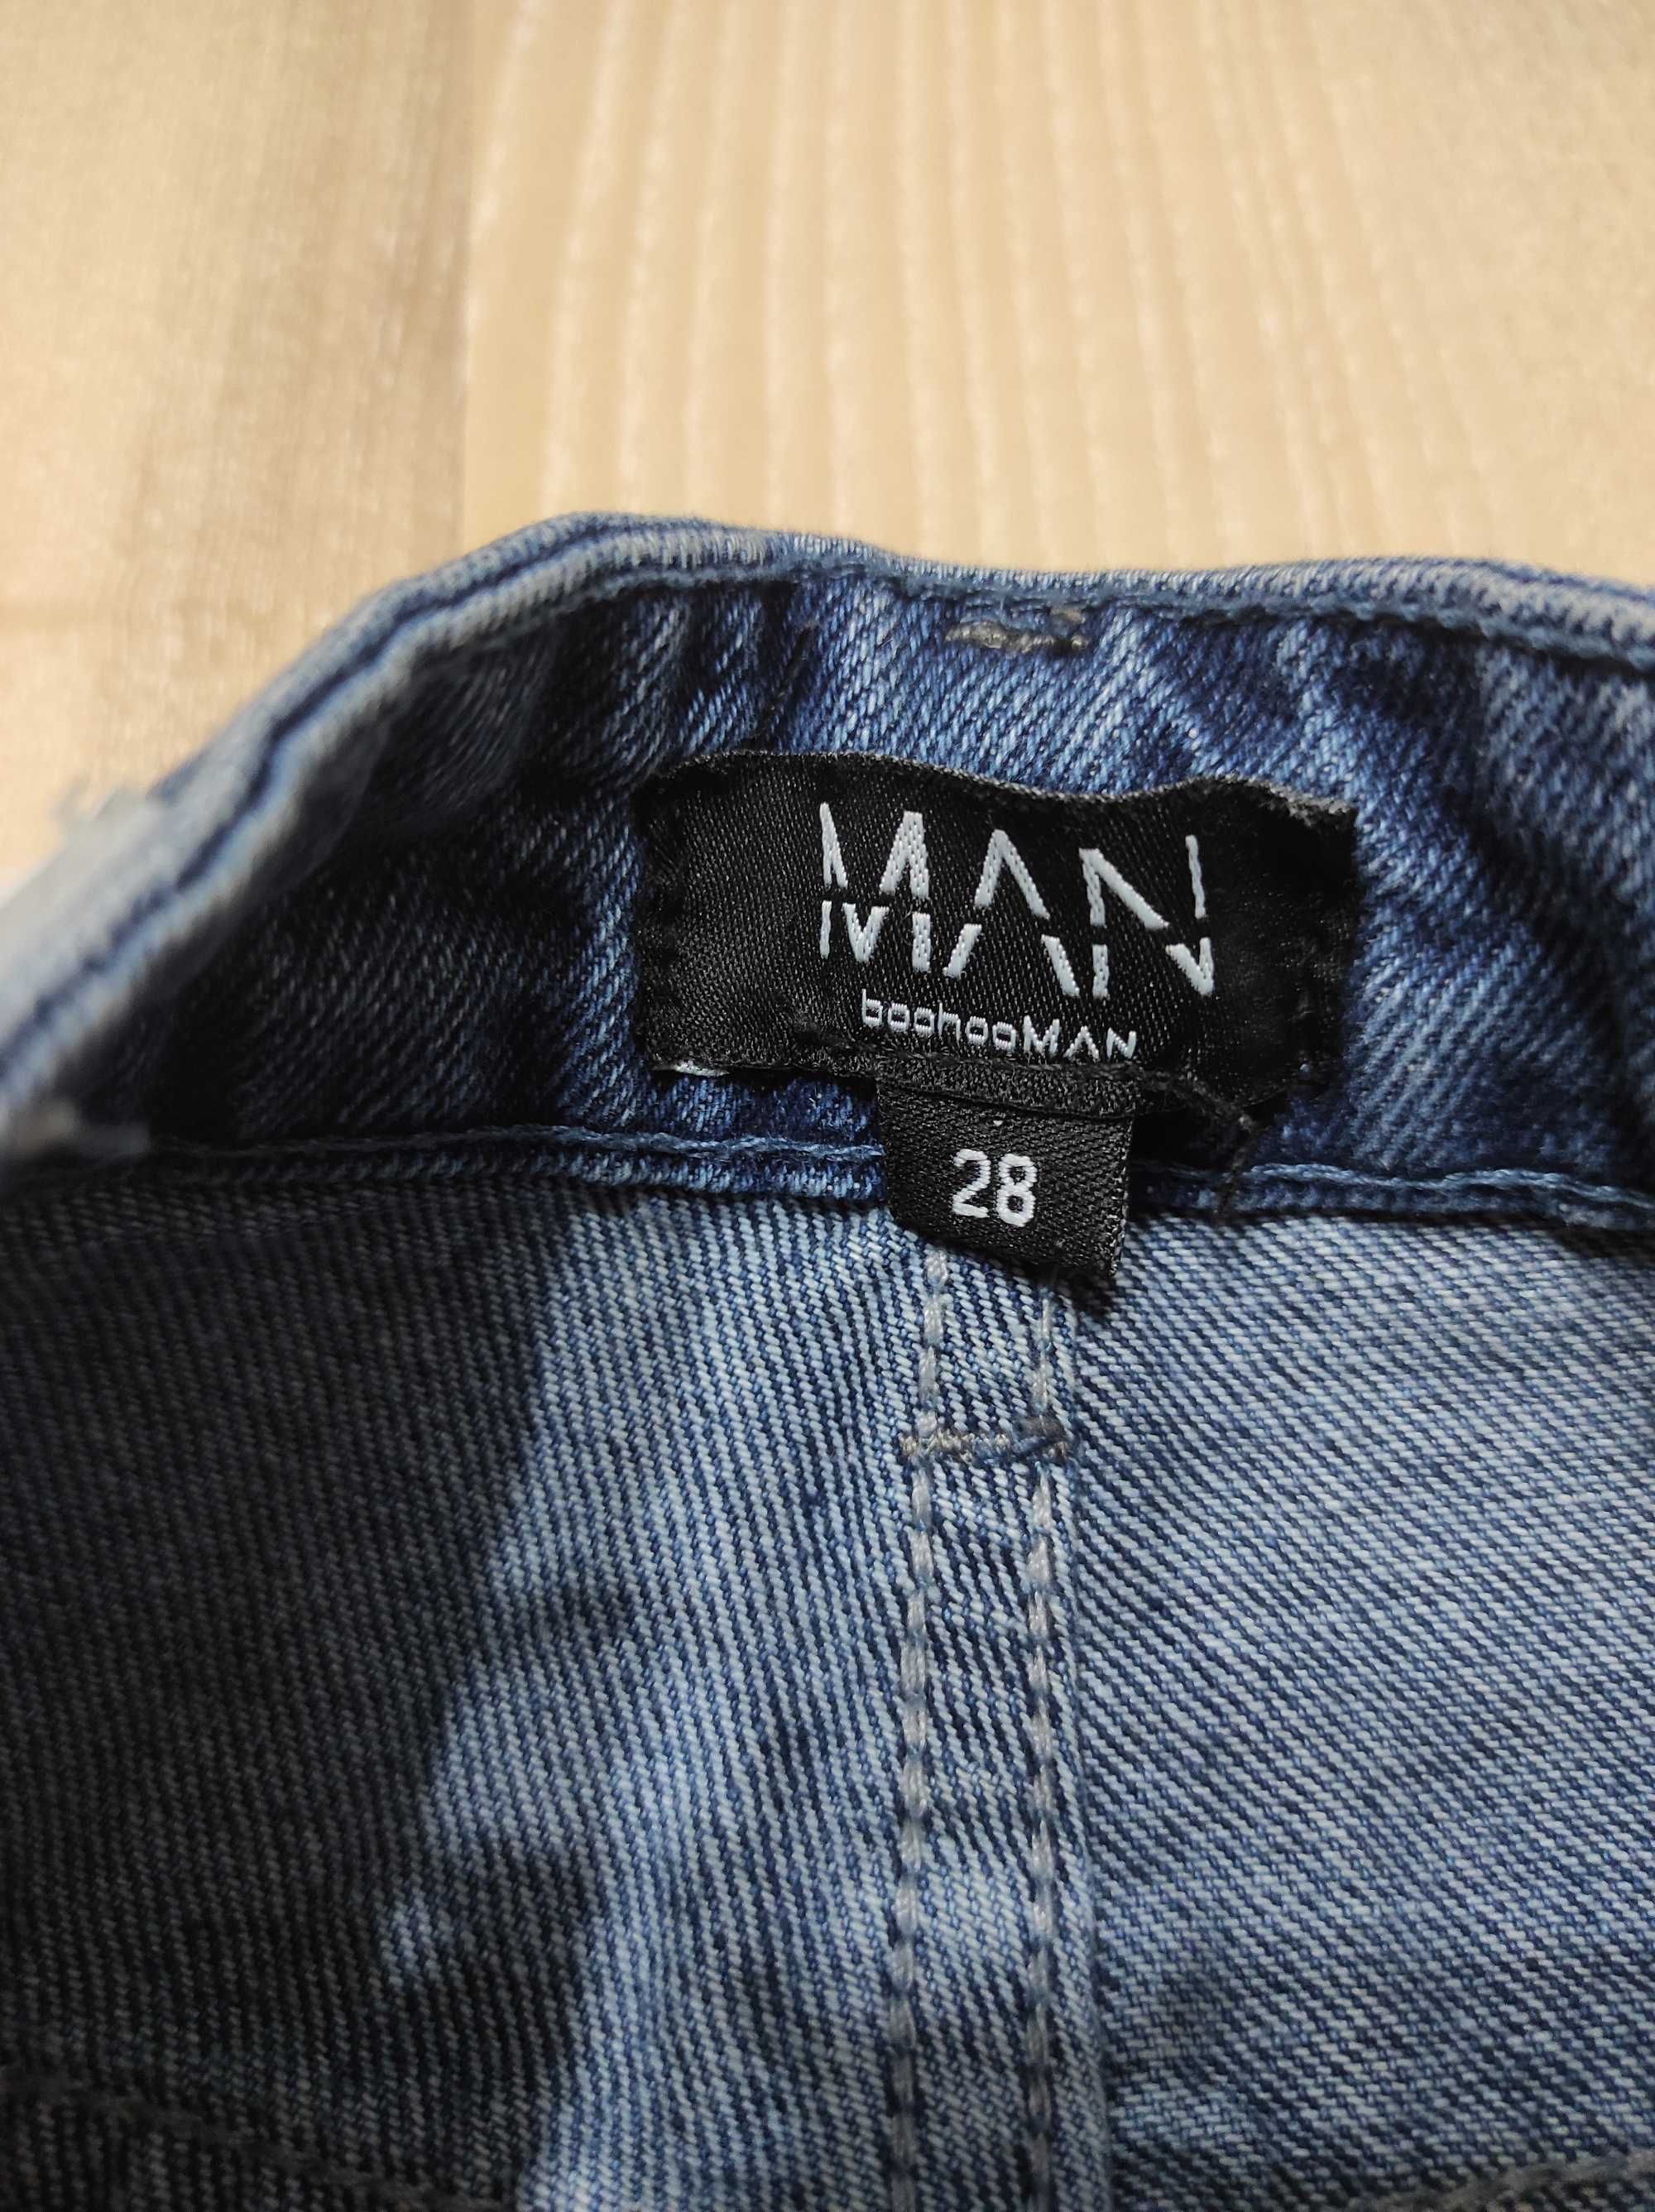 Высокие плотные джинсы МОМ, прямые плотные джинсы Boohoo размер 28